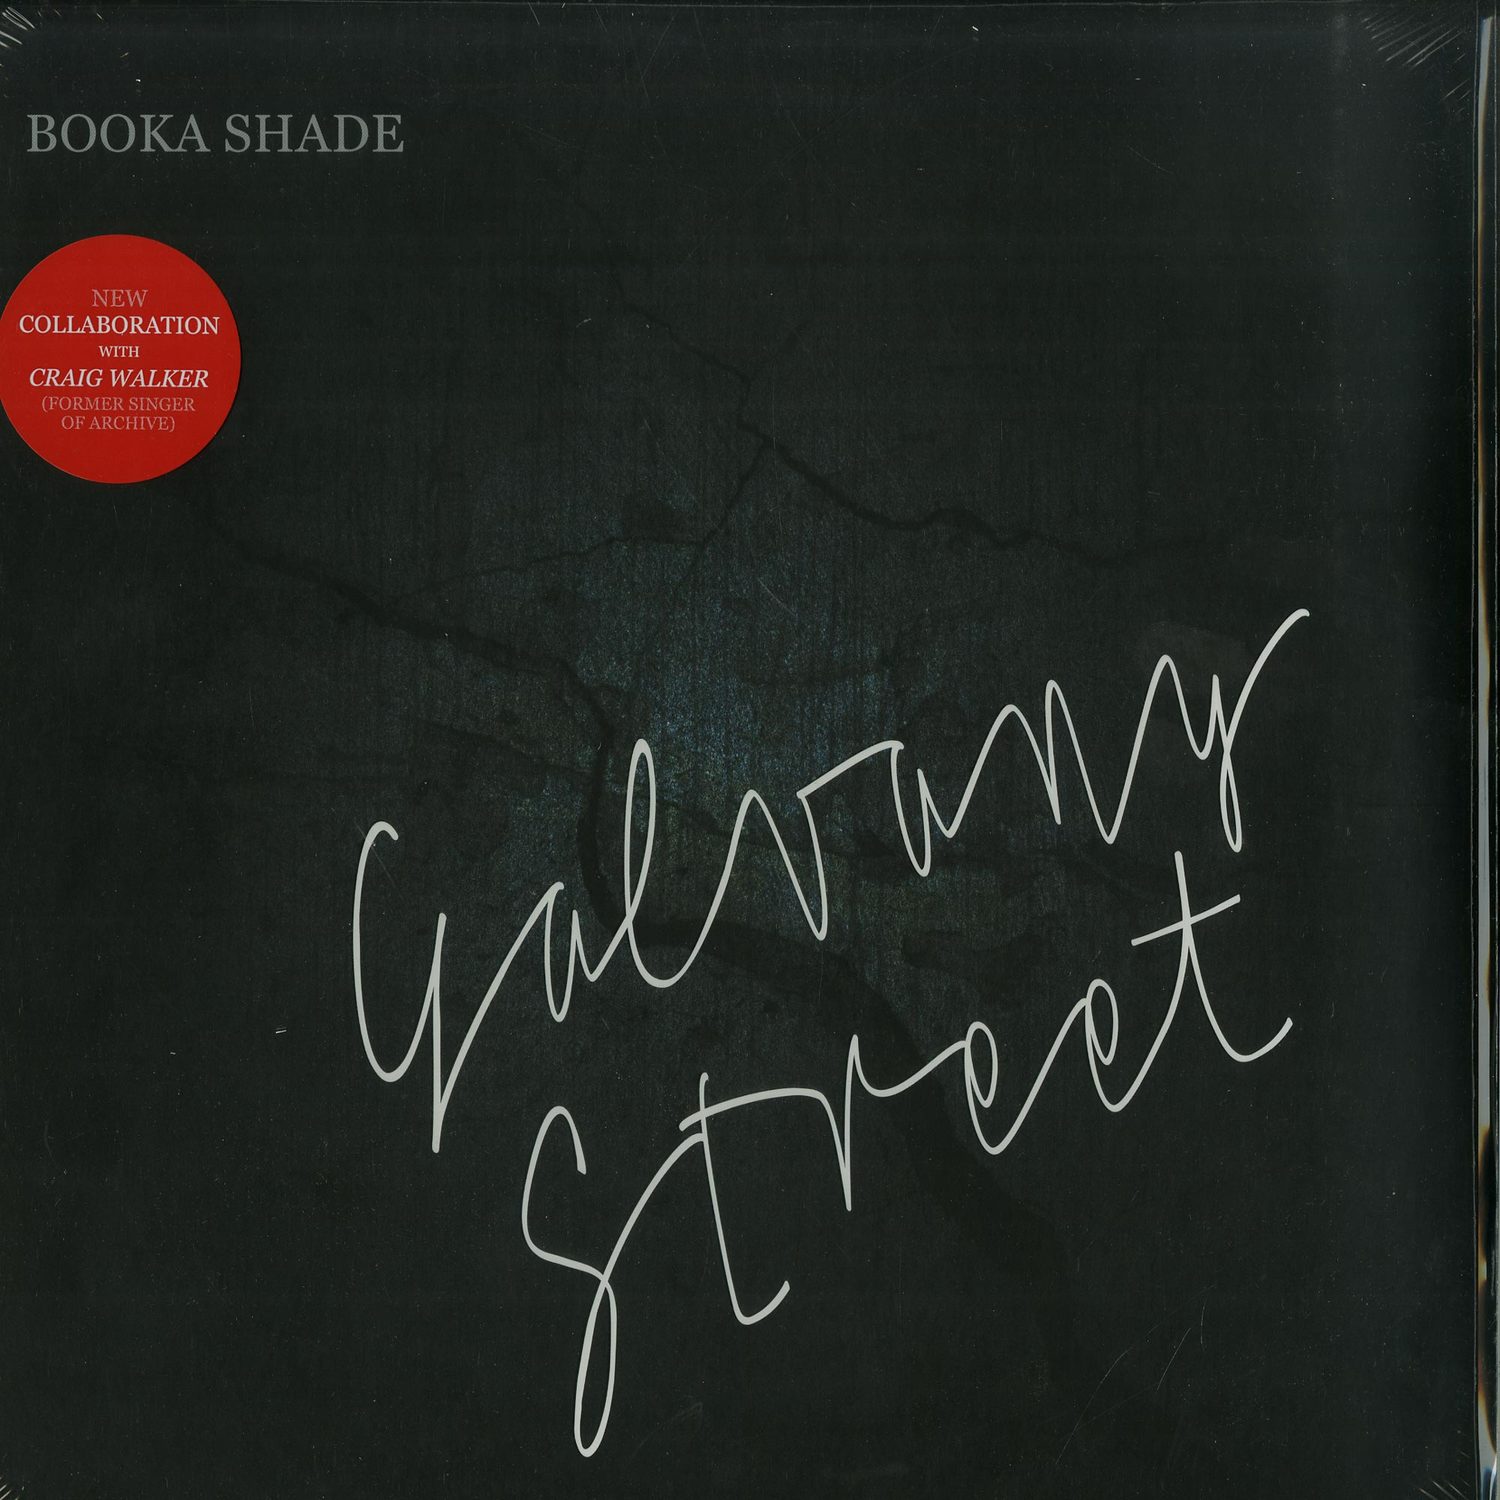 Booka Shade - GALVANY STREET 